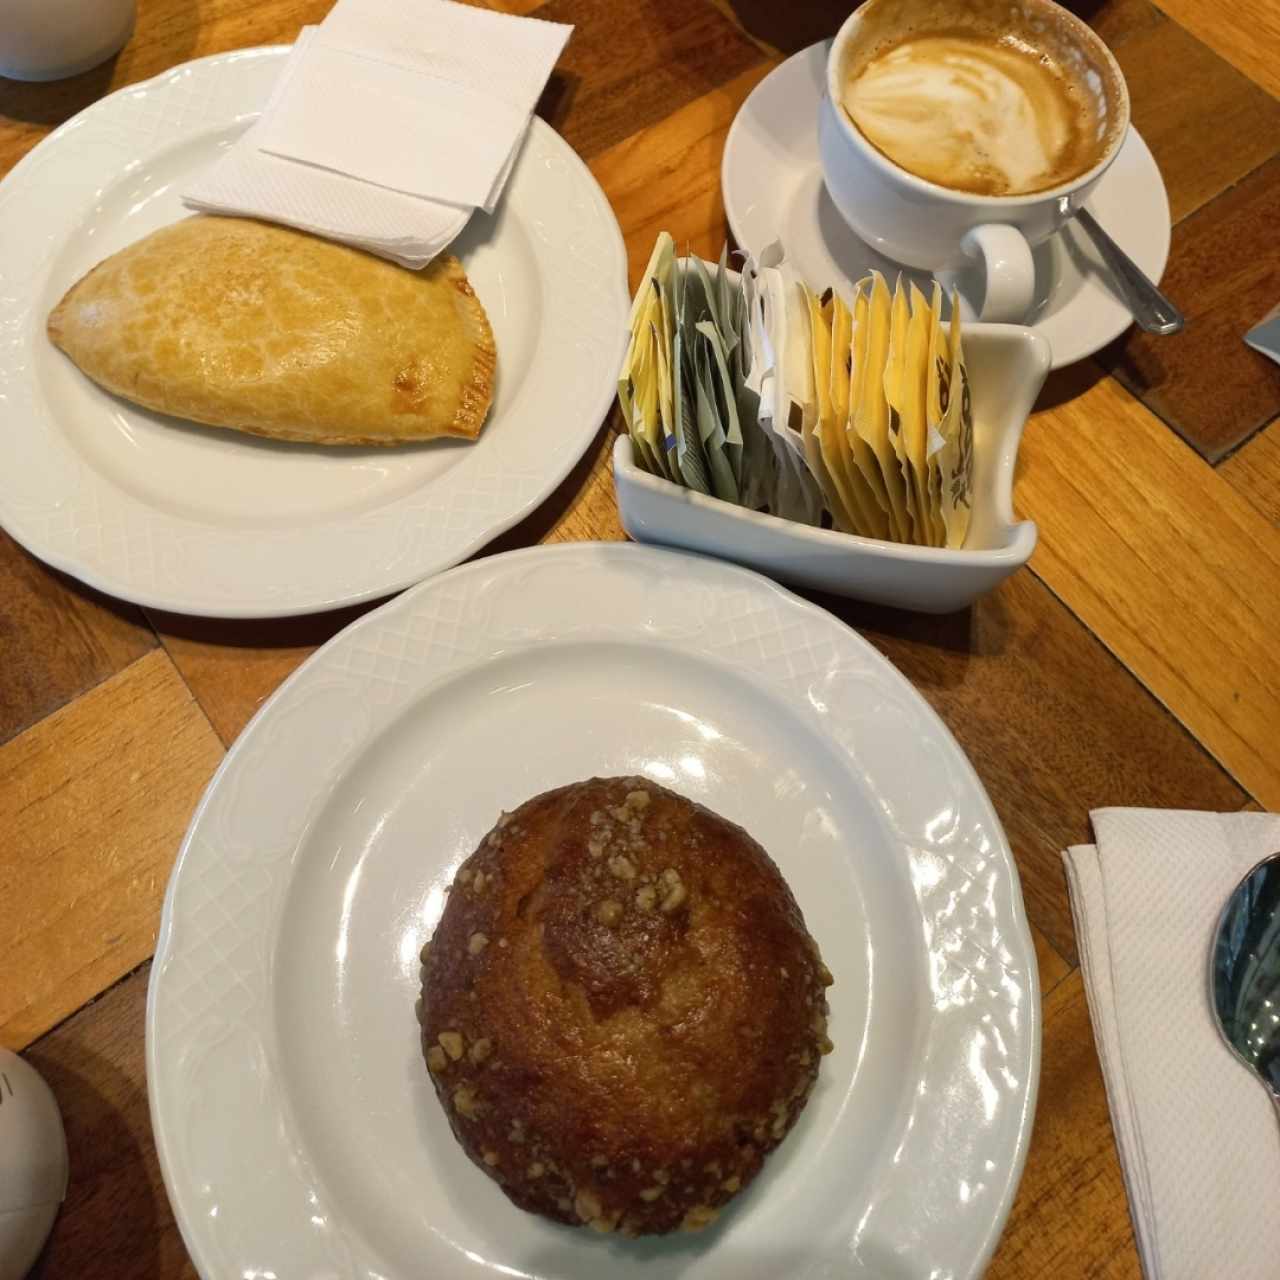 Panadería - Empanada de Queso muffin de banano y capuccino